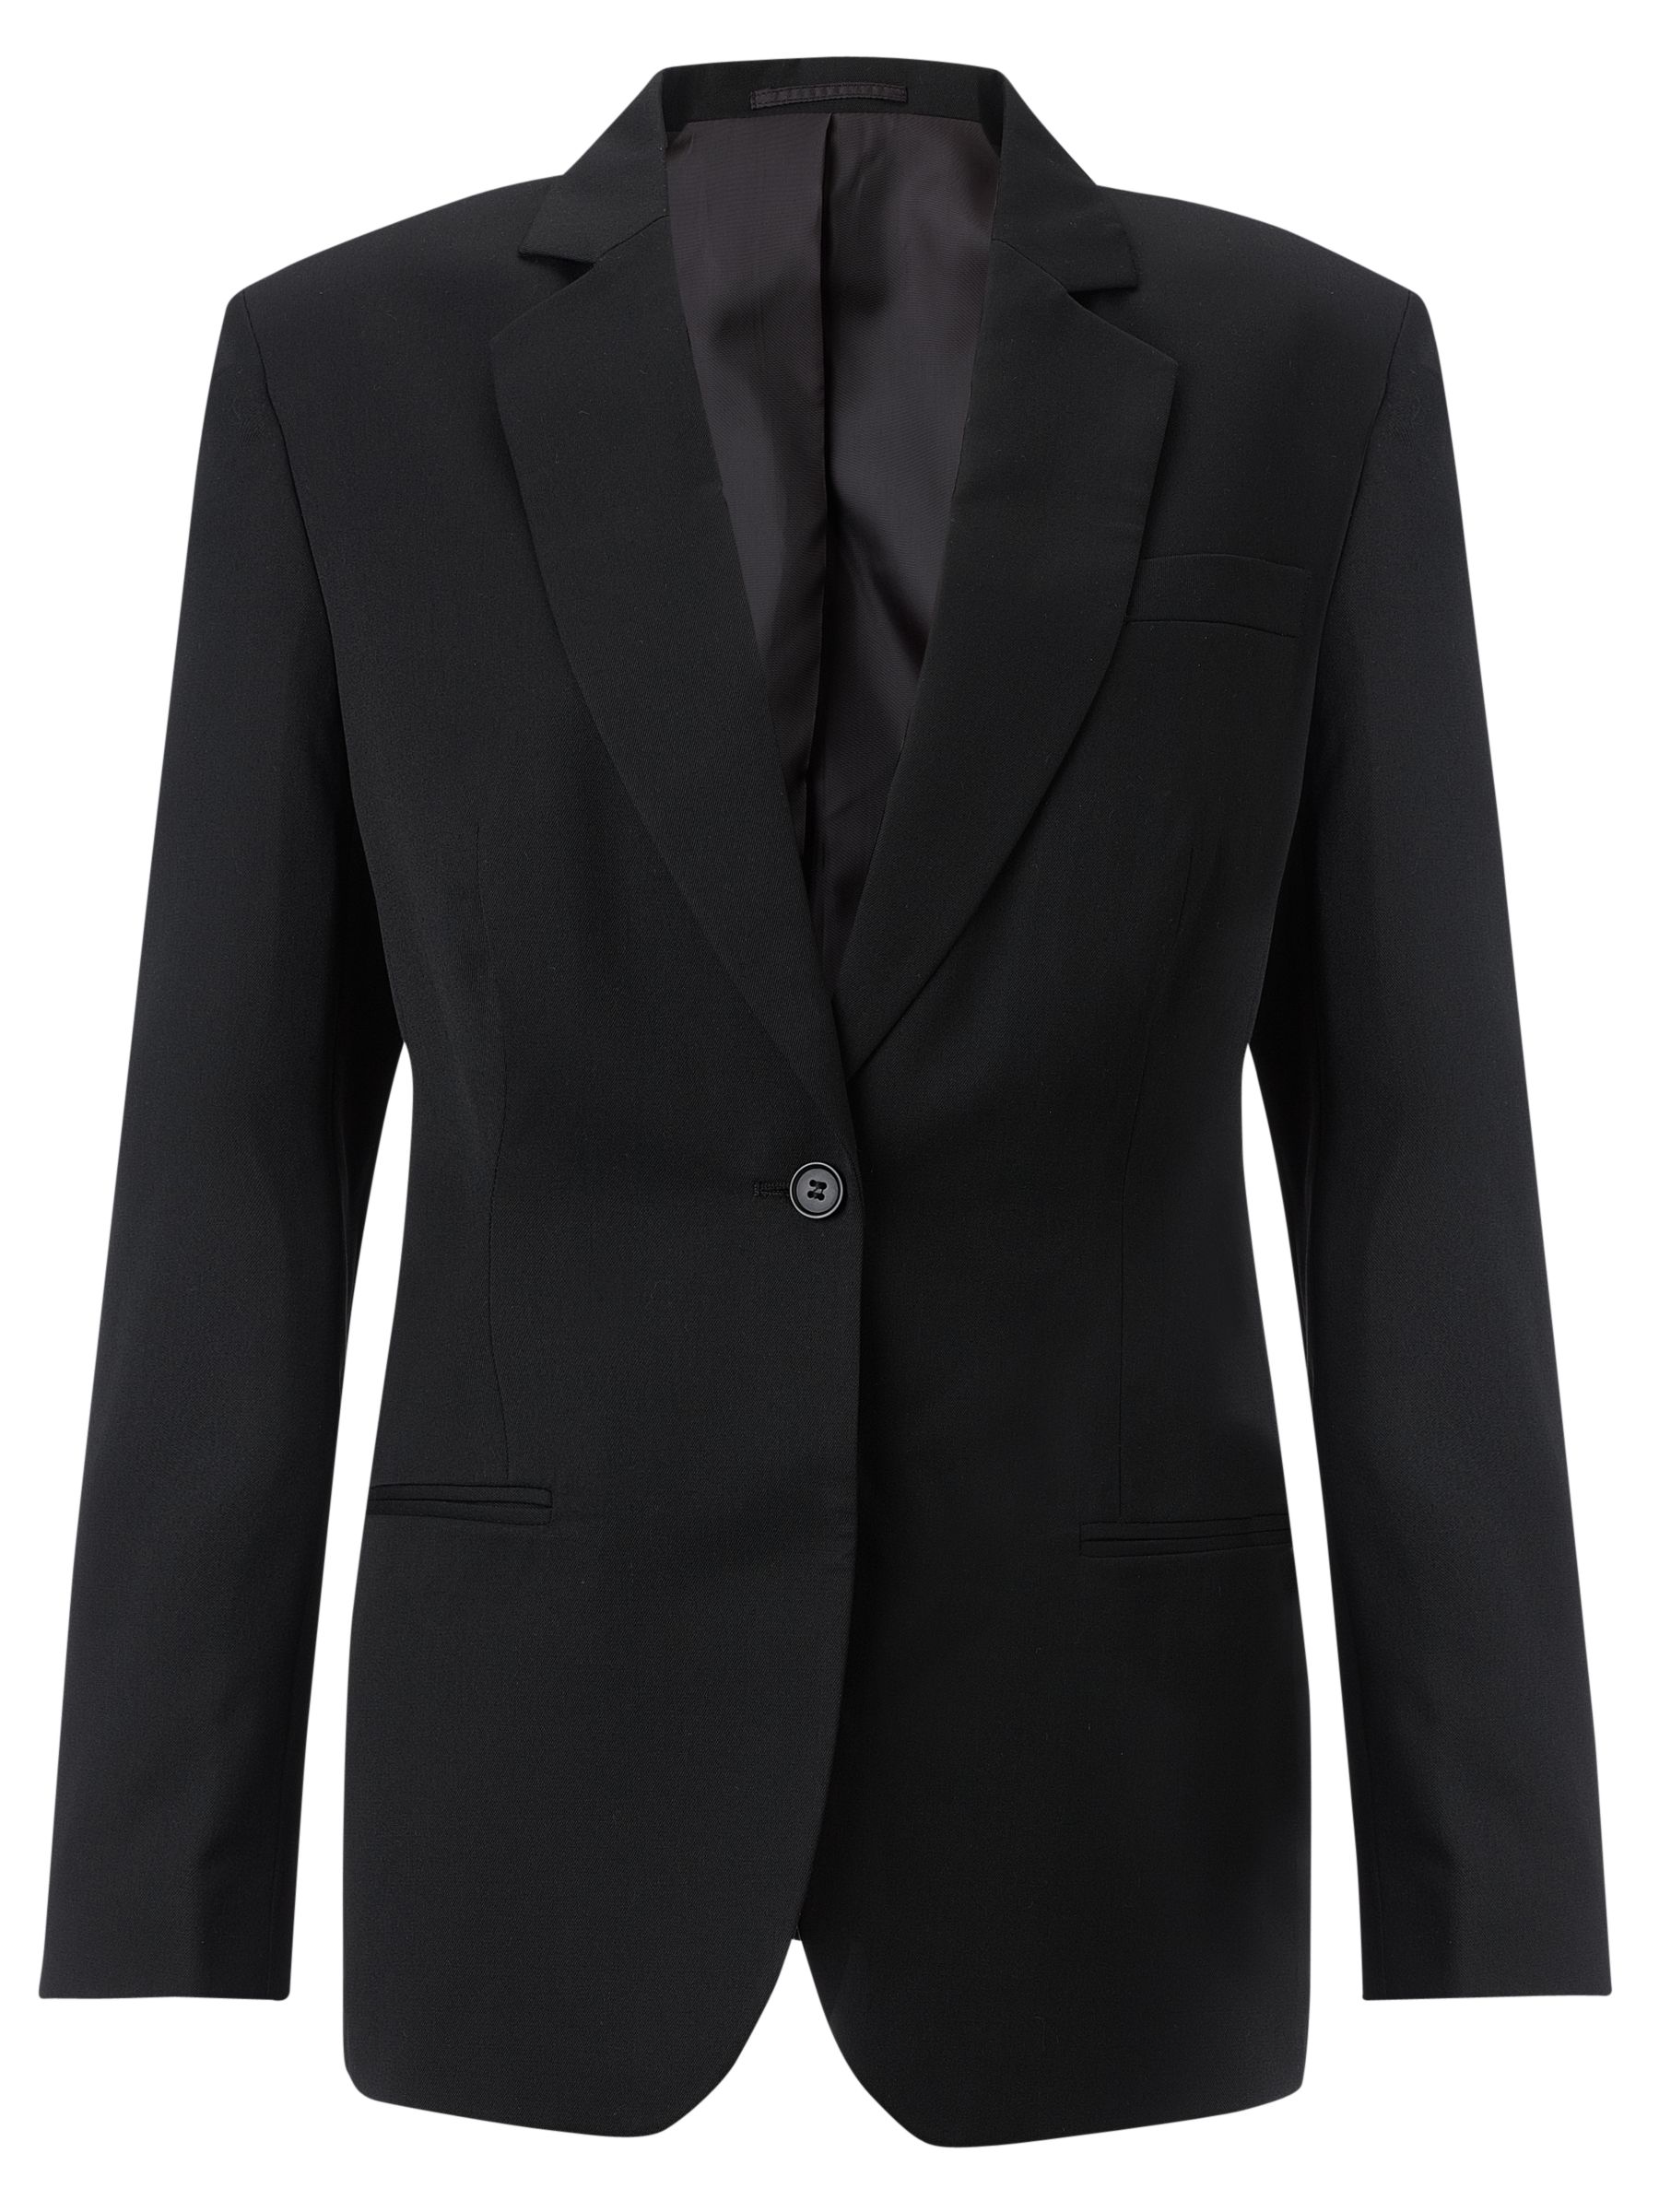 John Lewis 6th Form Girls' Suit Jacket, Black at John Lewis & Partners